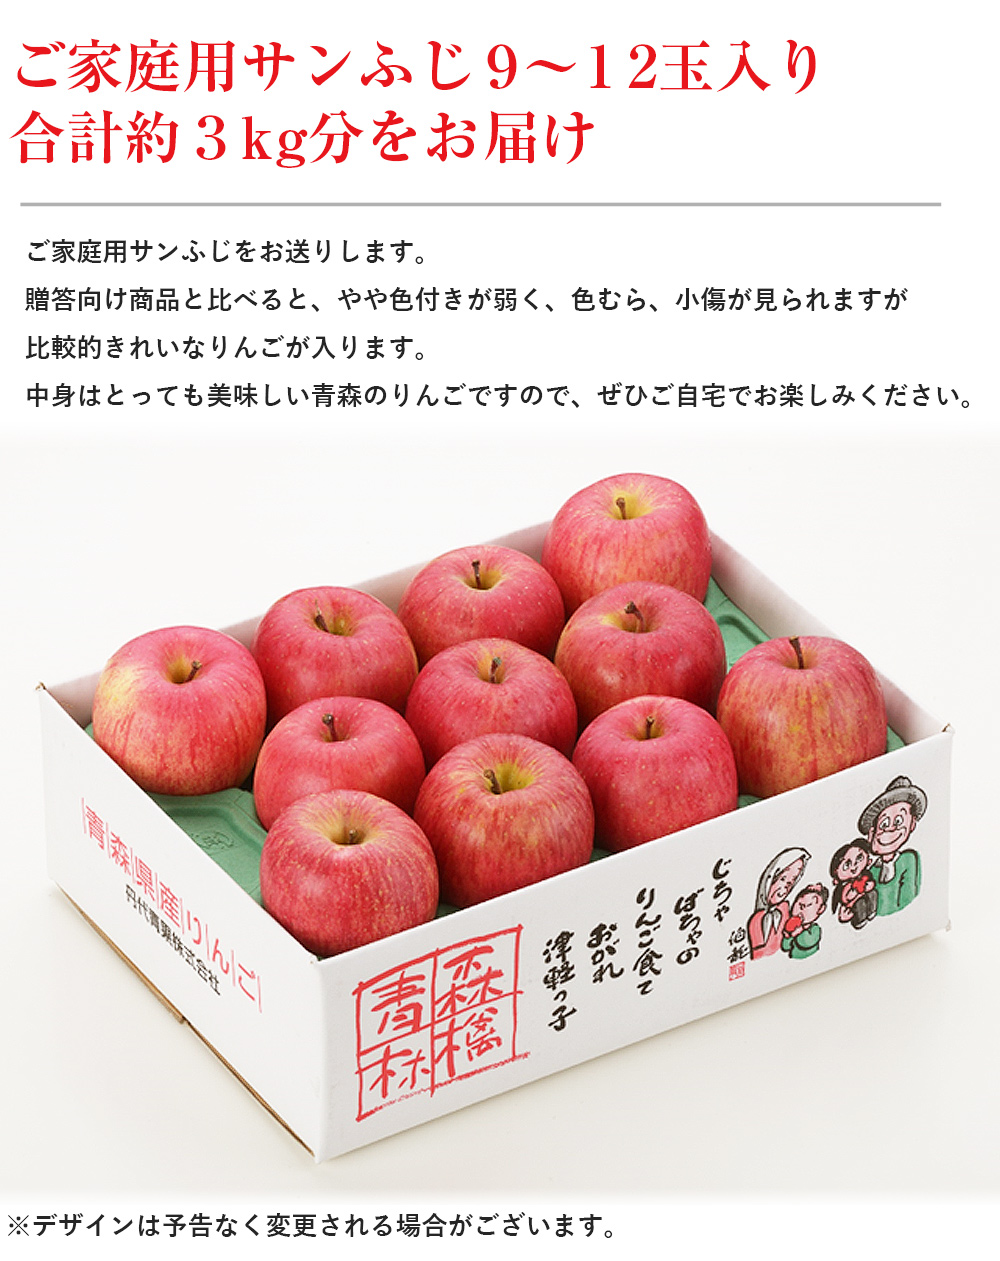 サンふじ 青森県産 ご家庭用 3kg 9〜12玉 りんご リンゴ 林檎 ふじ